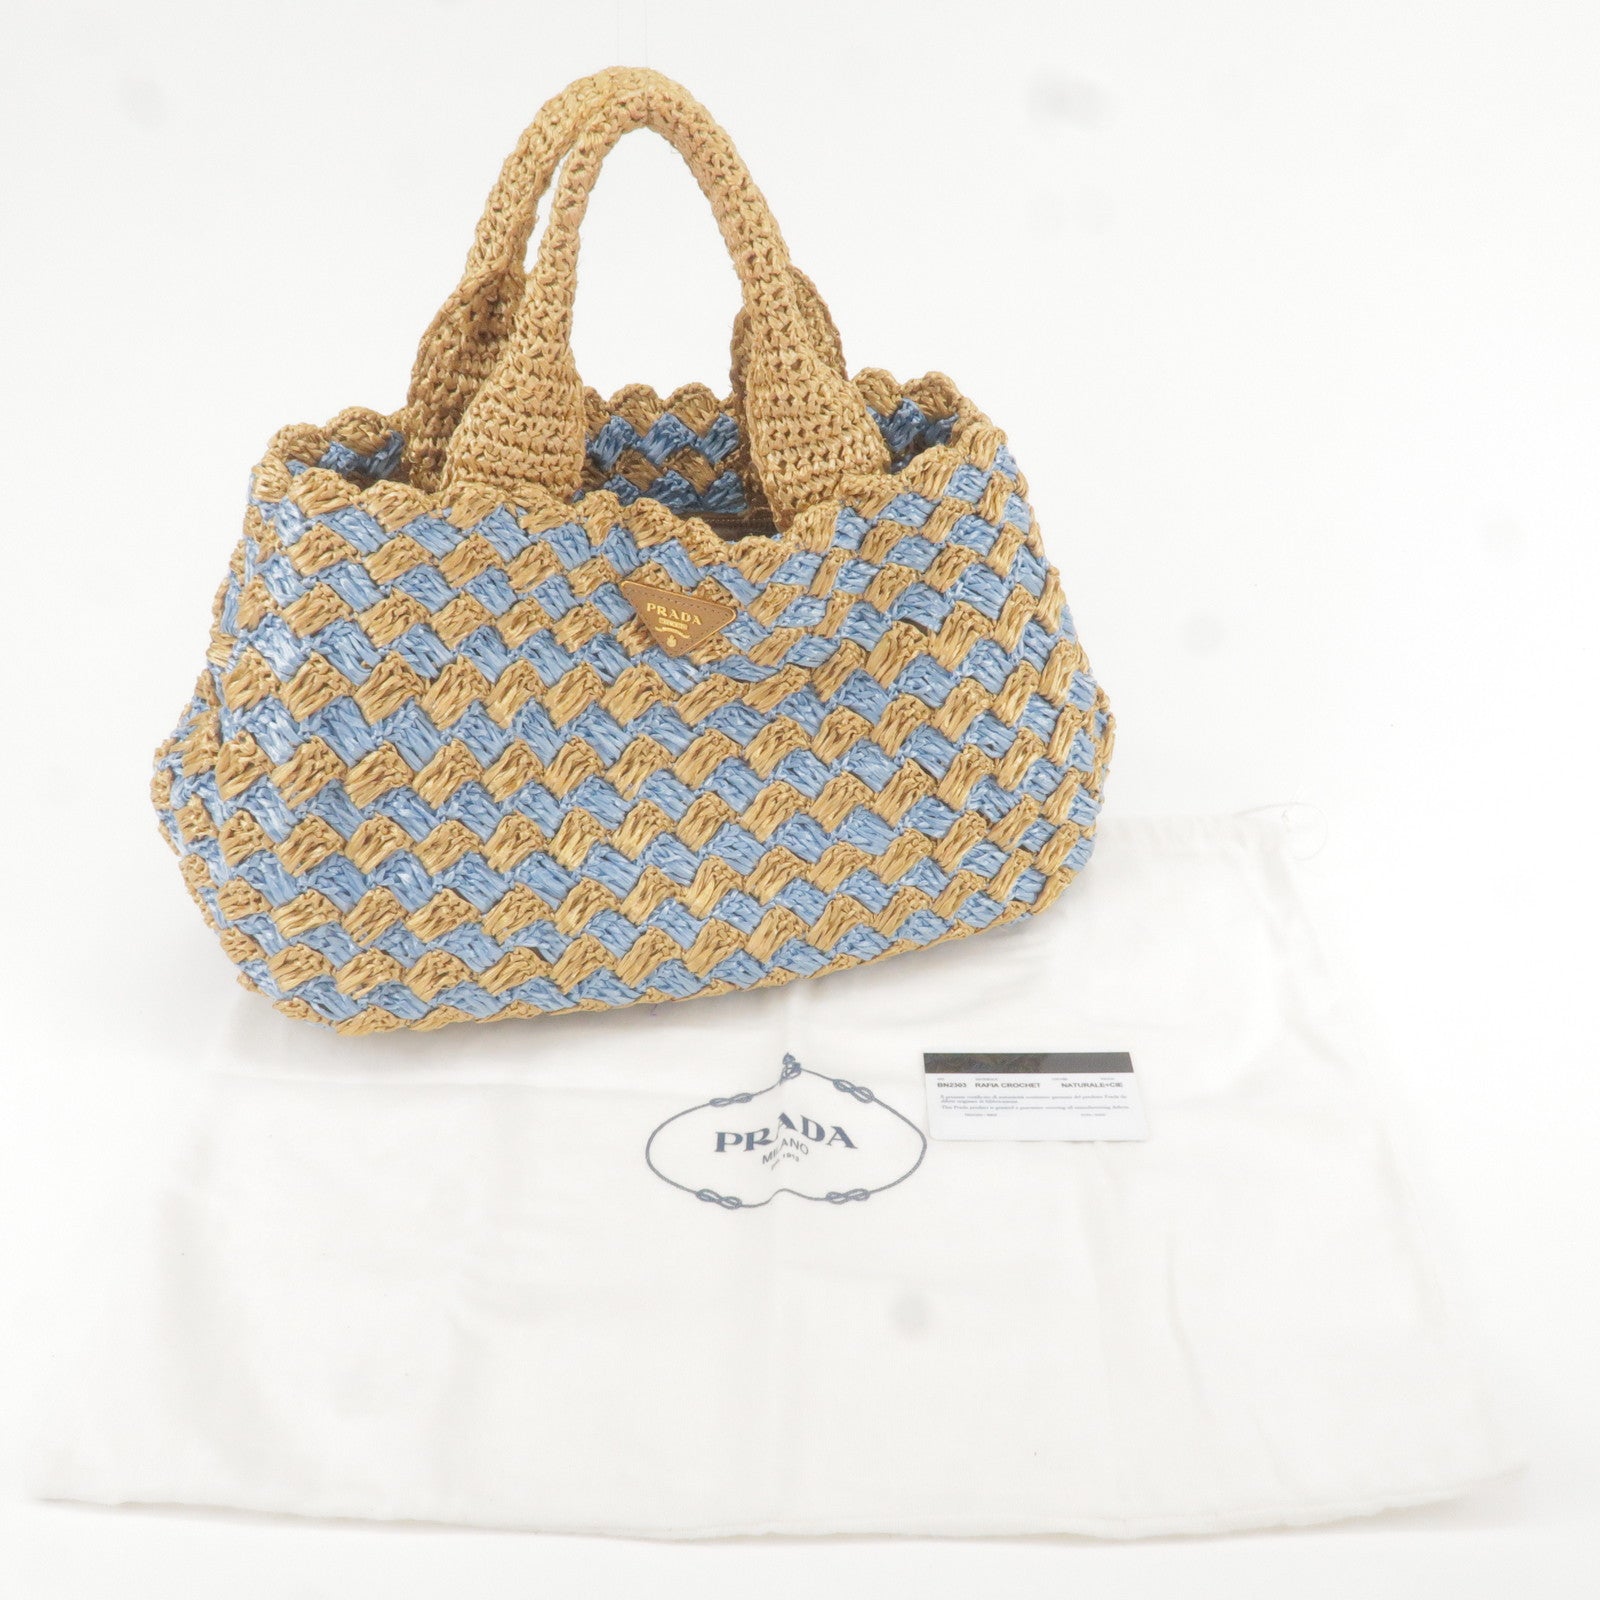 Prada Small Crochet Tote Bag in Yellow